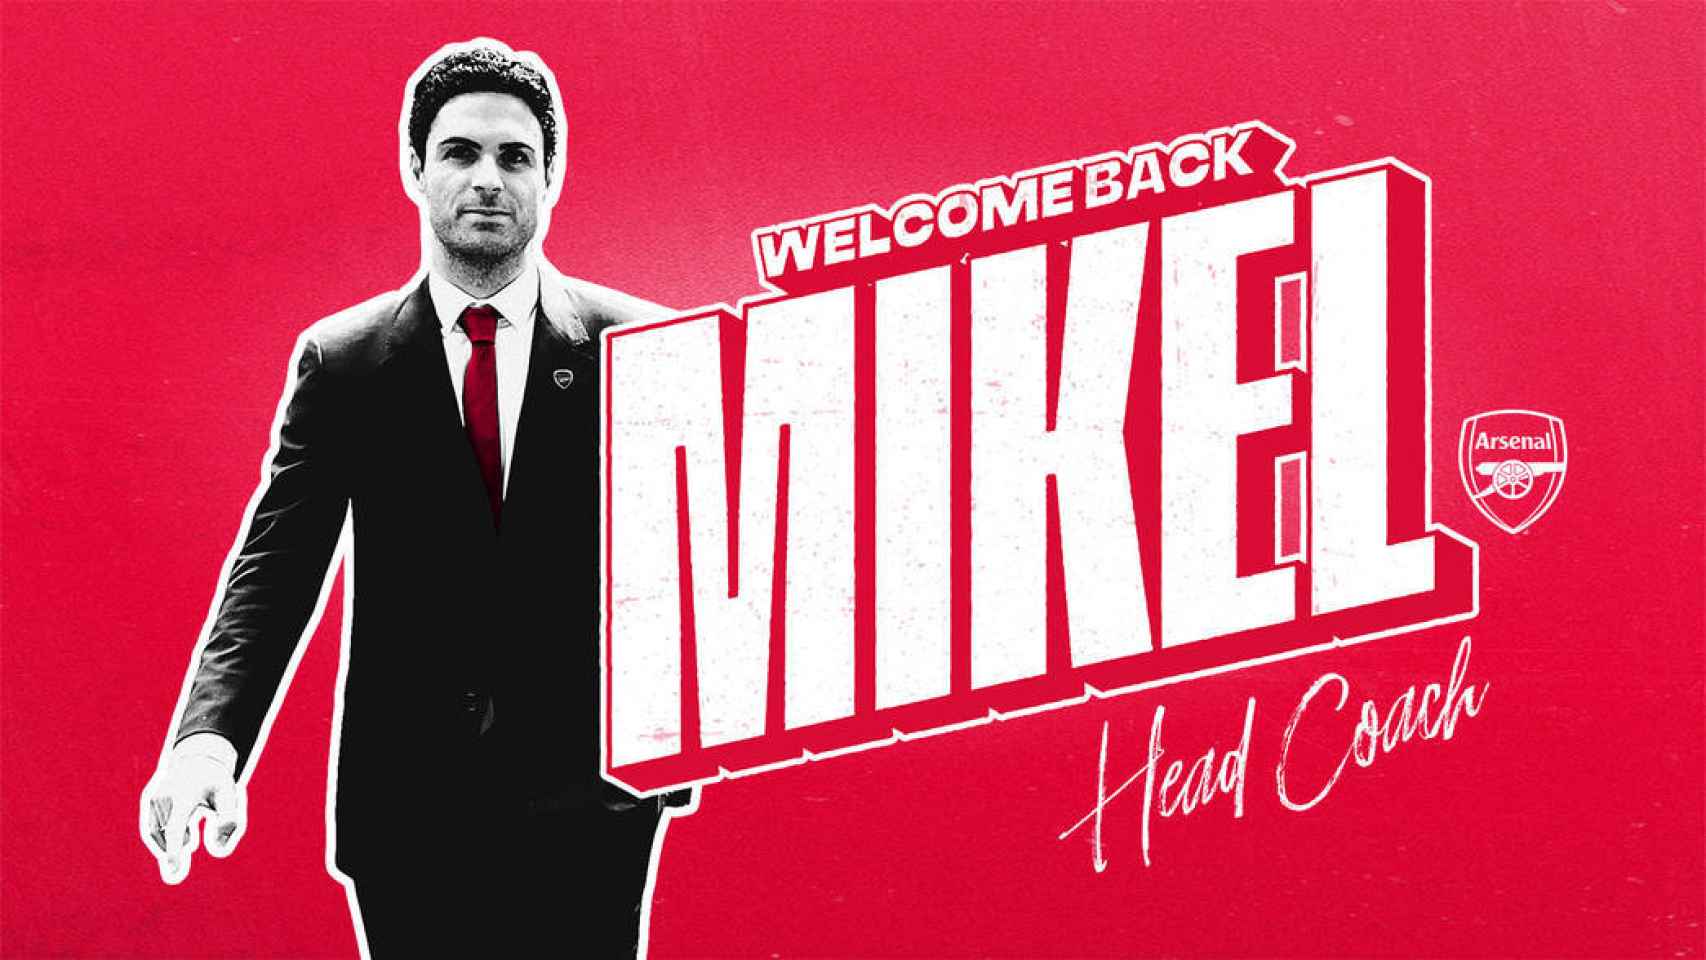 Mikel Arteta, nuevo entrenador del Arsenal